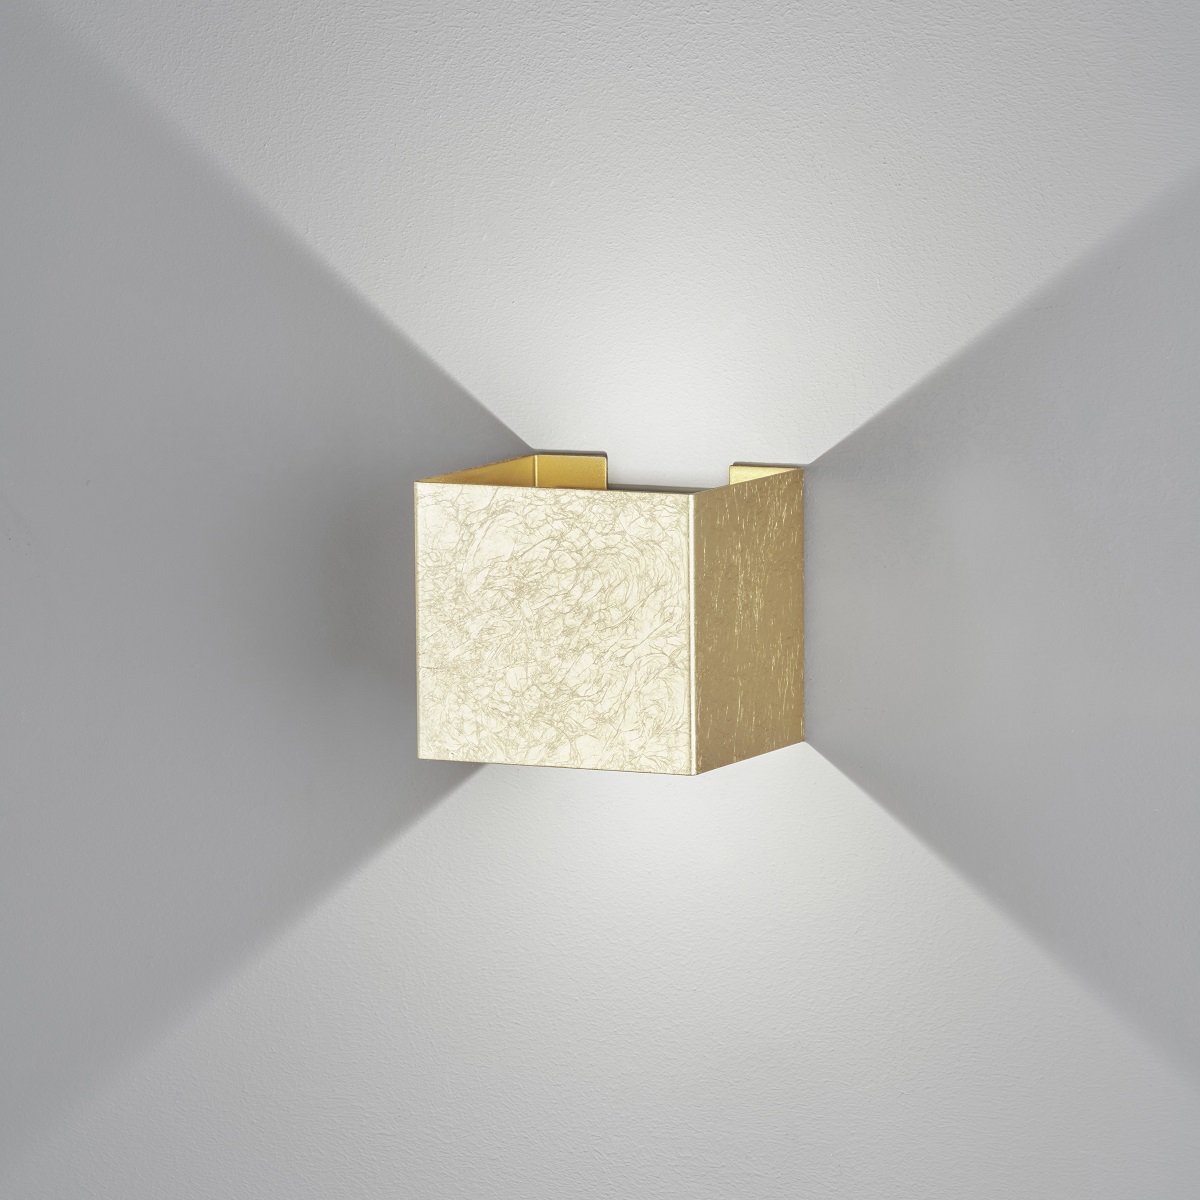 LED-Lampen In Einer Box Auf Einer Spiegeloberfläche. Moderne